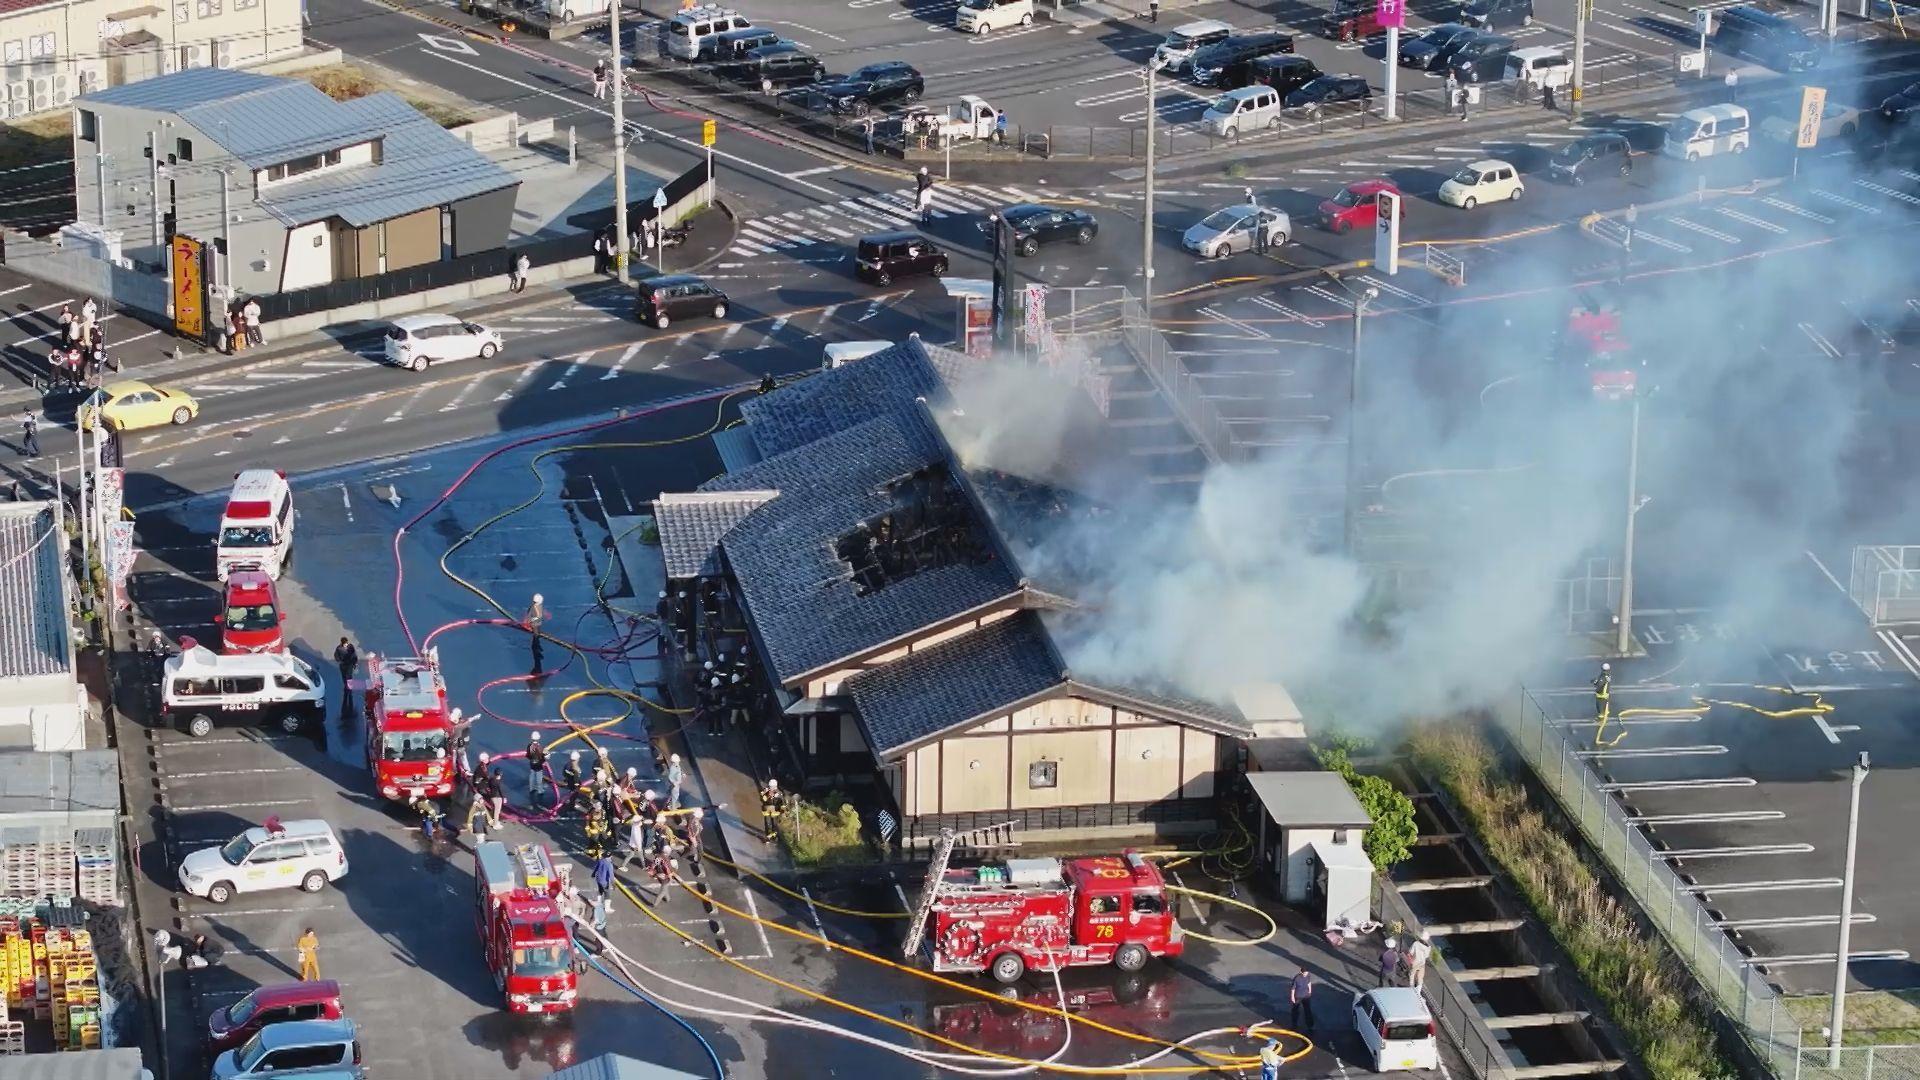 ｢厨房から火が出た｣佐々町で飲食店全焼火災 搬送された作業員は軽症